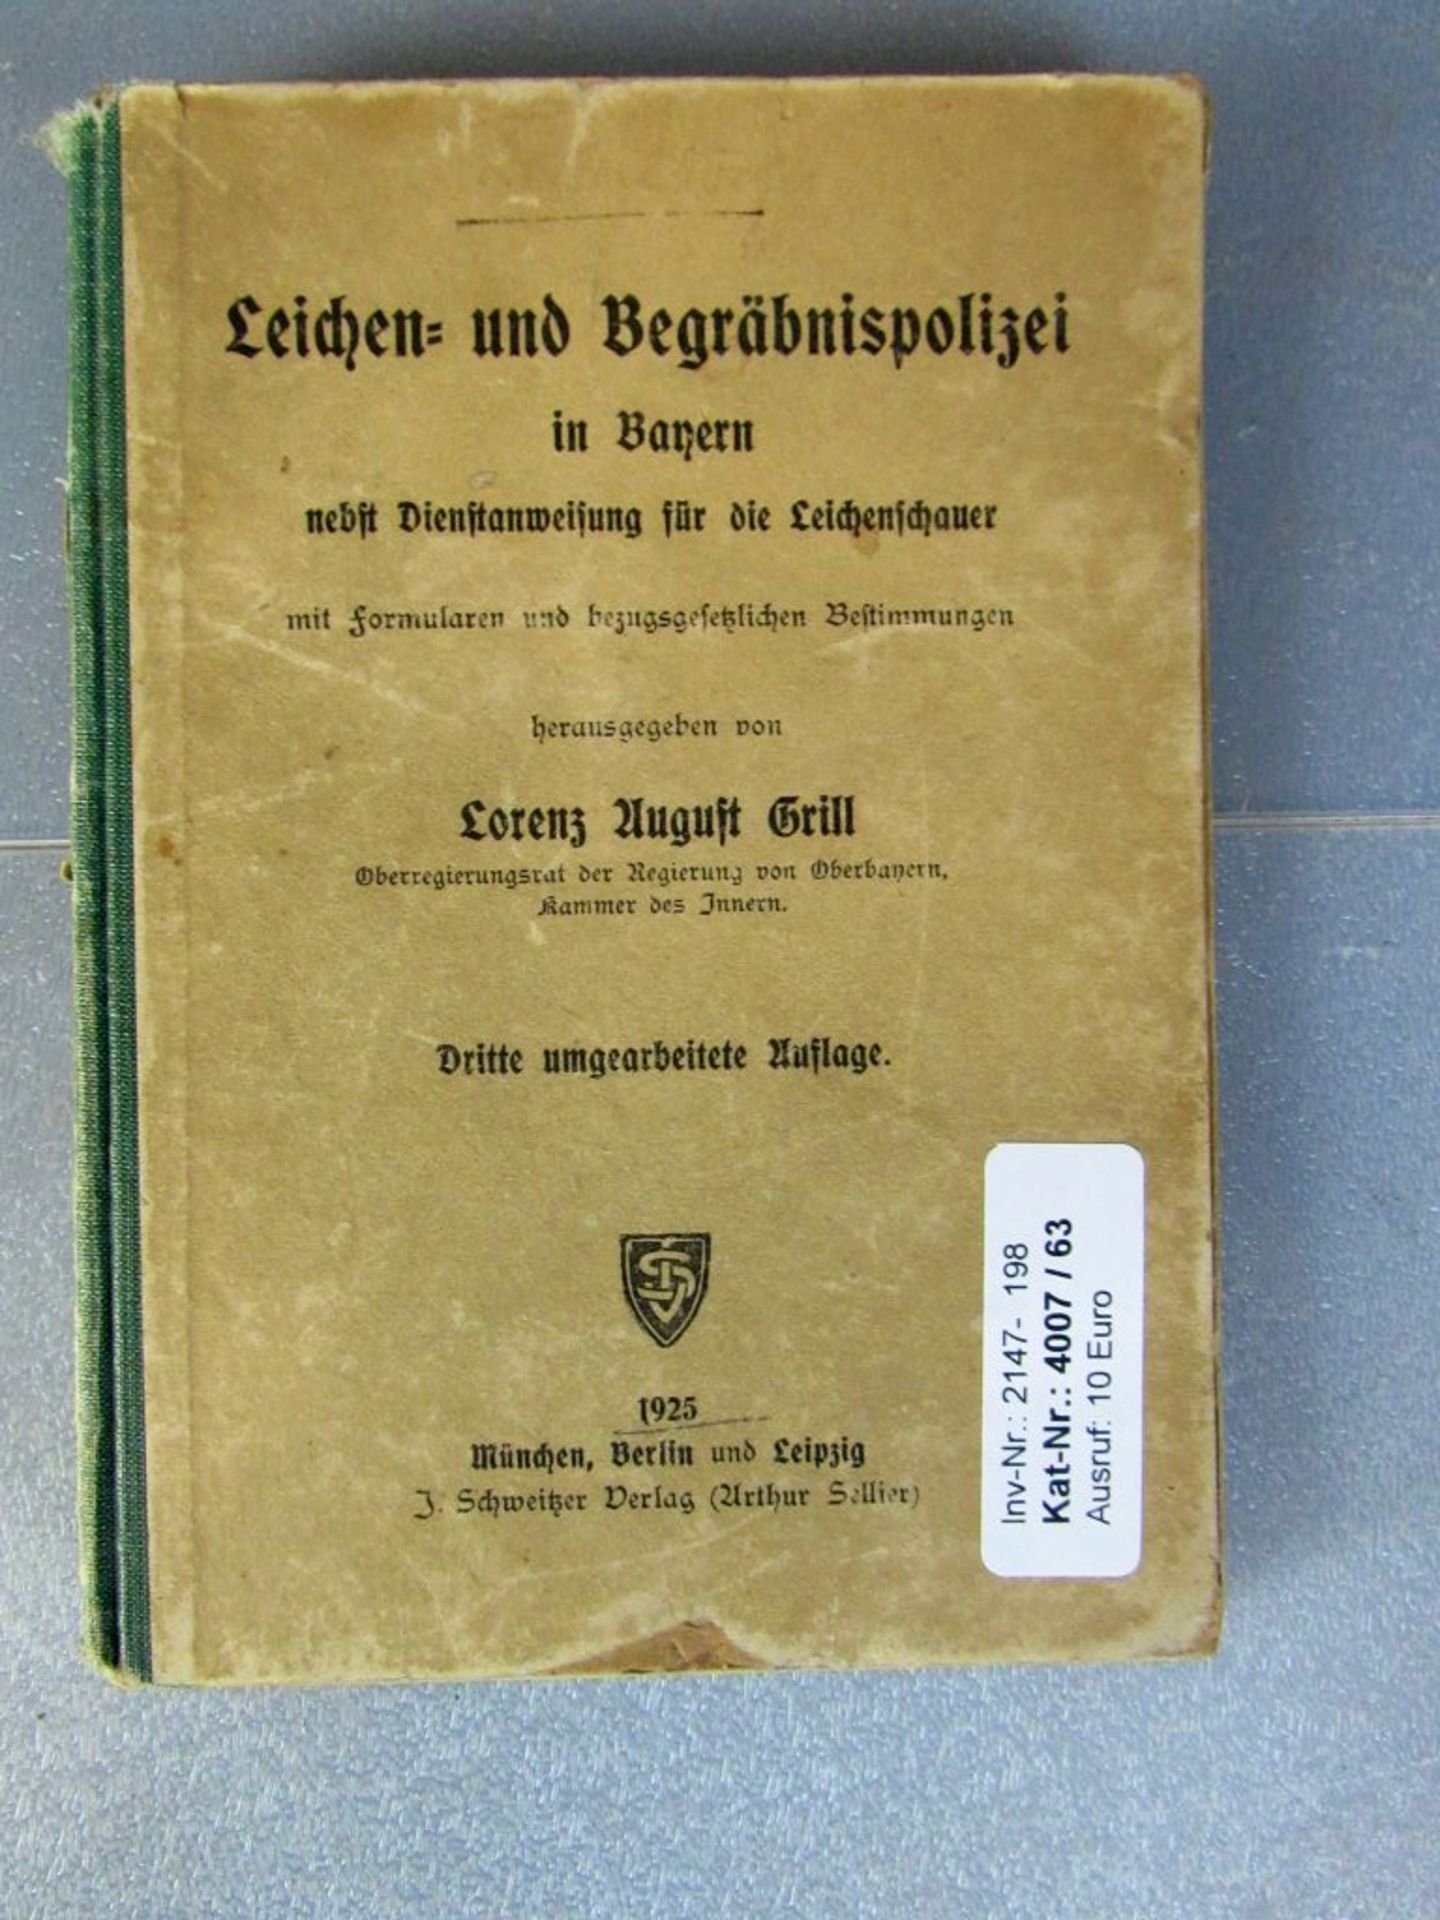 Seltenes Buch Leichen und - Image 3 of 21